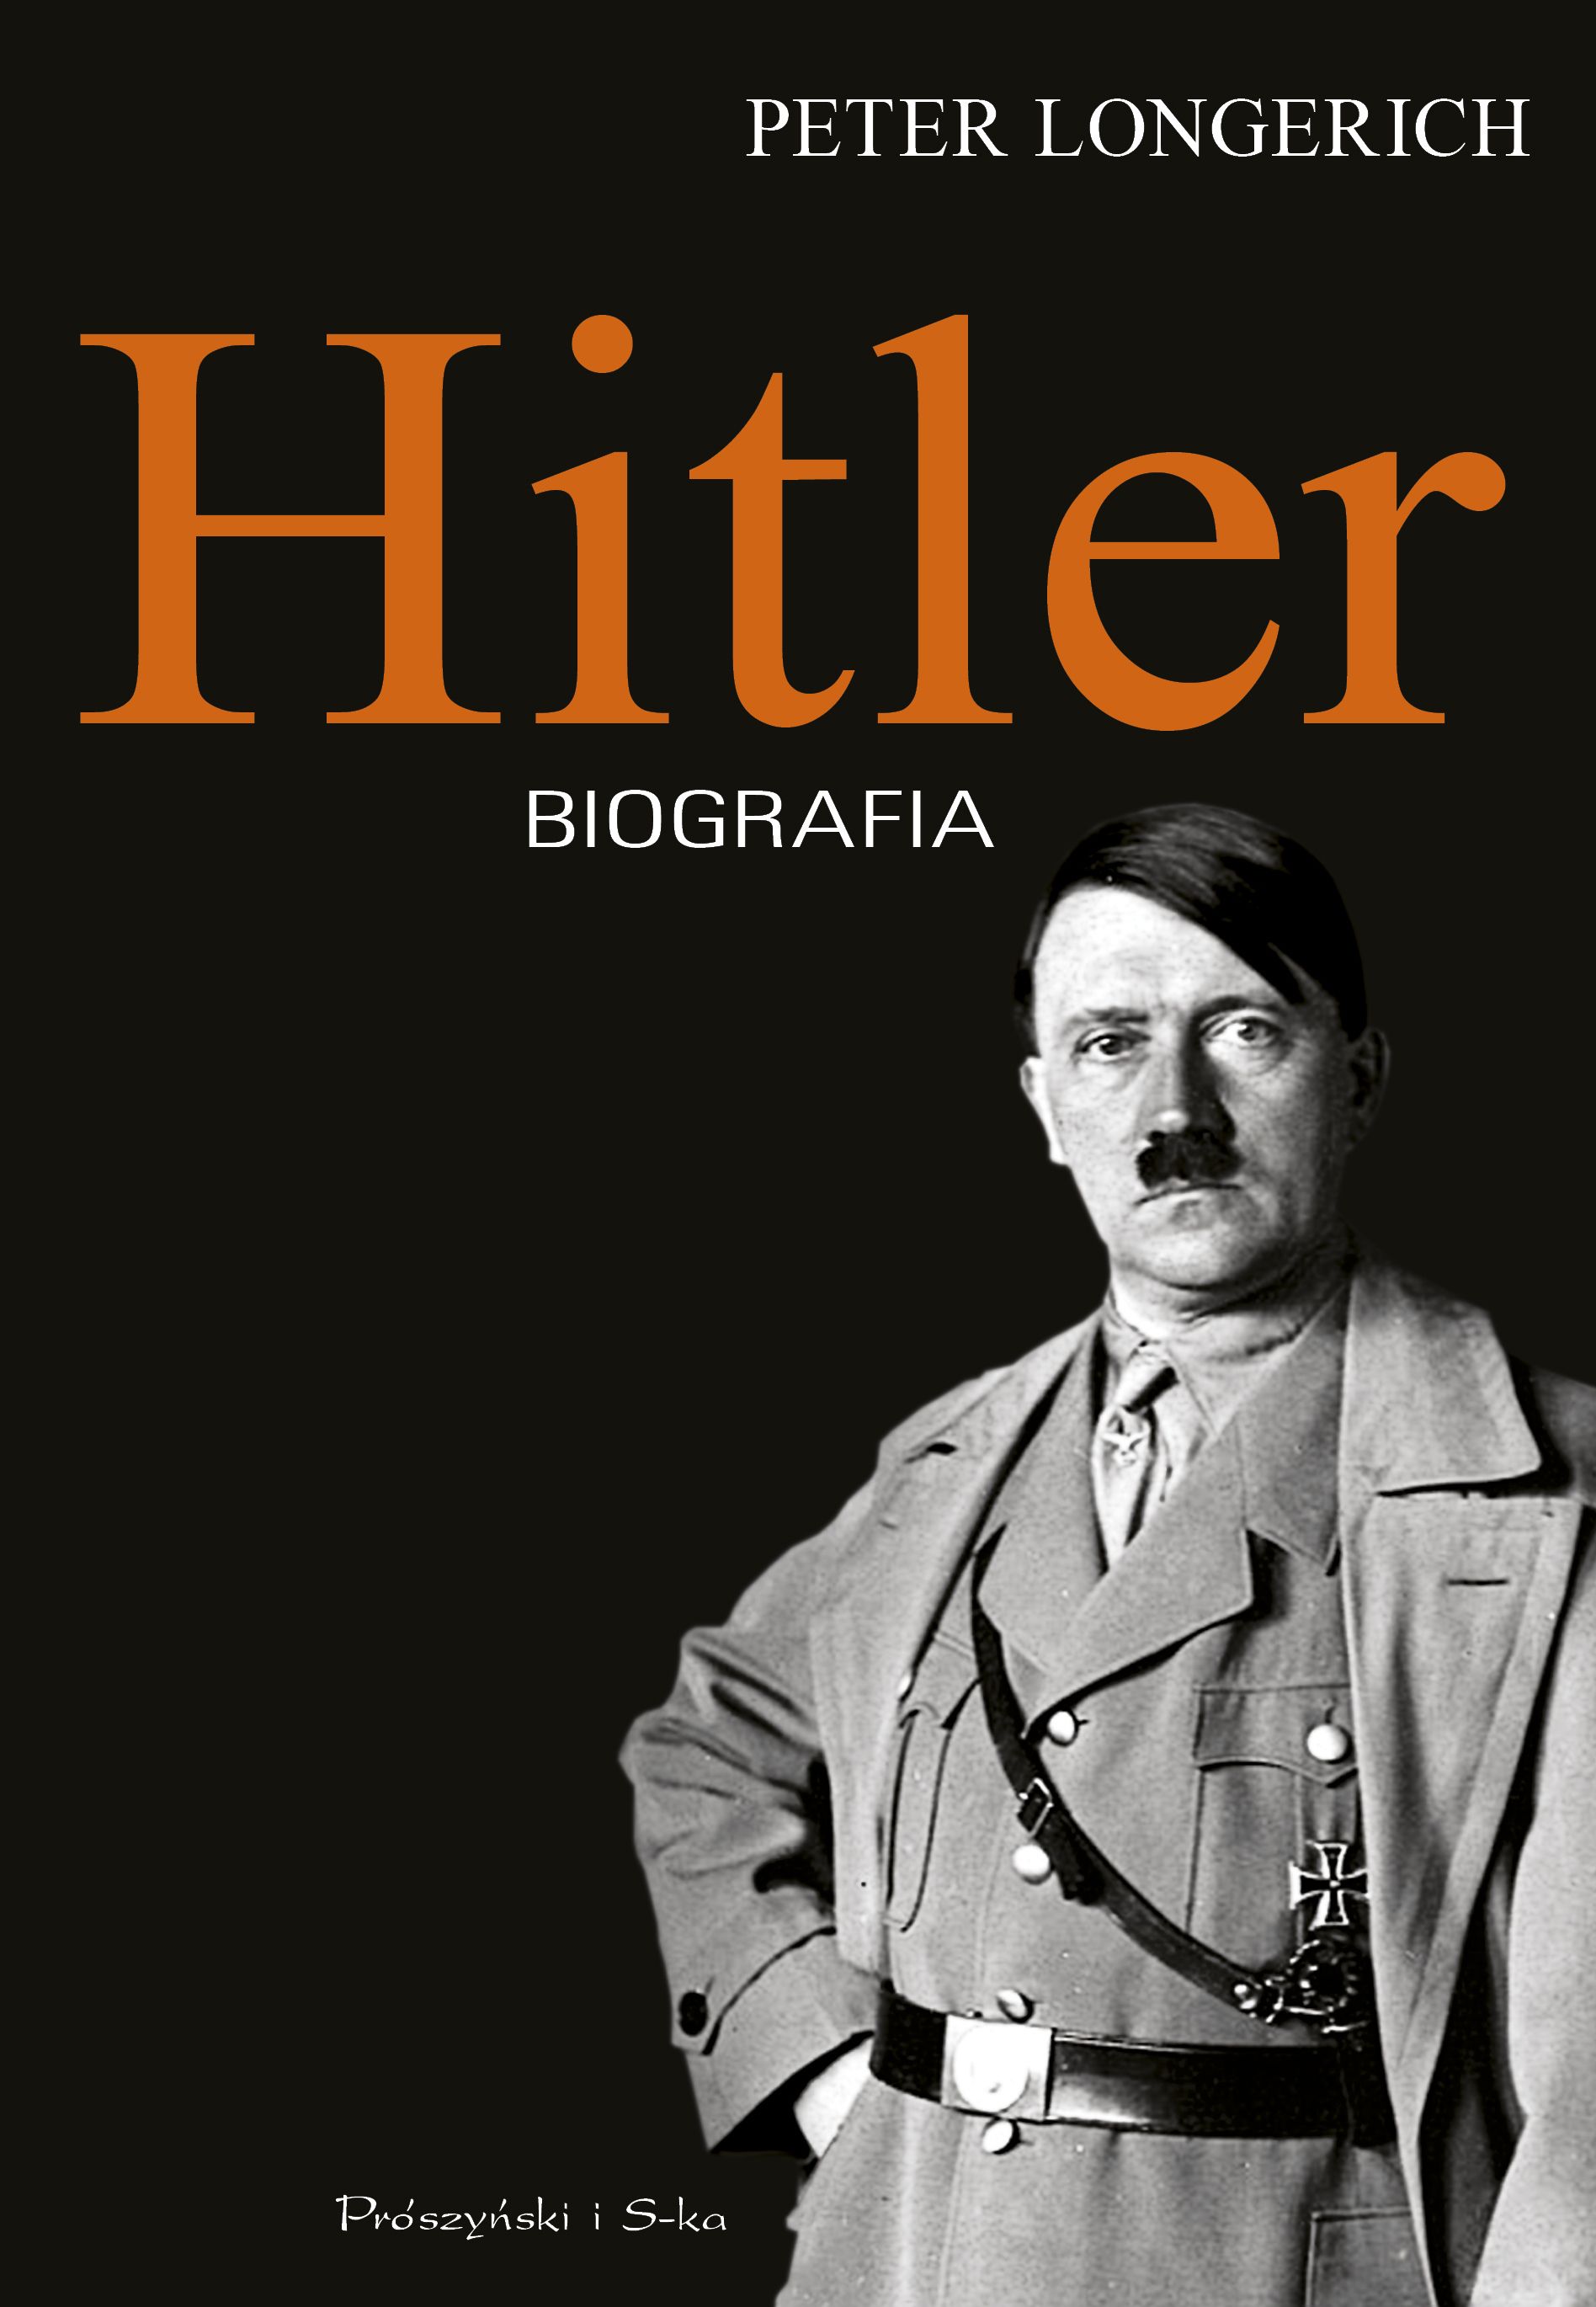 Artykuł powstał między innymi na podstawie książki Petera Longericha, zatytułowanej "Hitler. Biografia" (Prószyński i S-ka 2017).